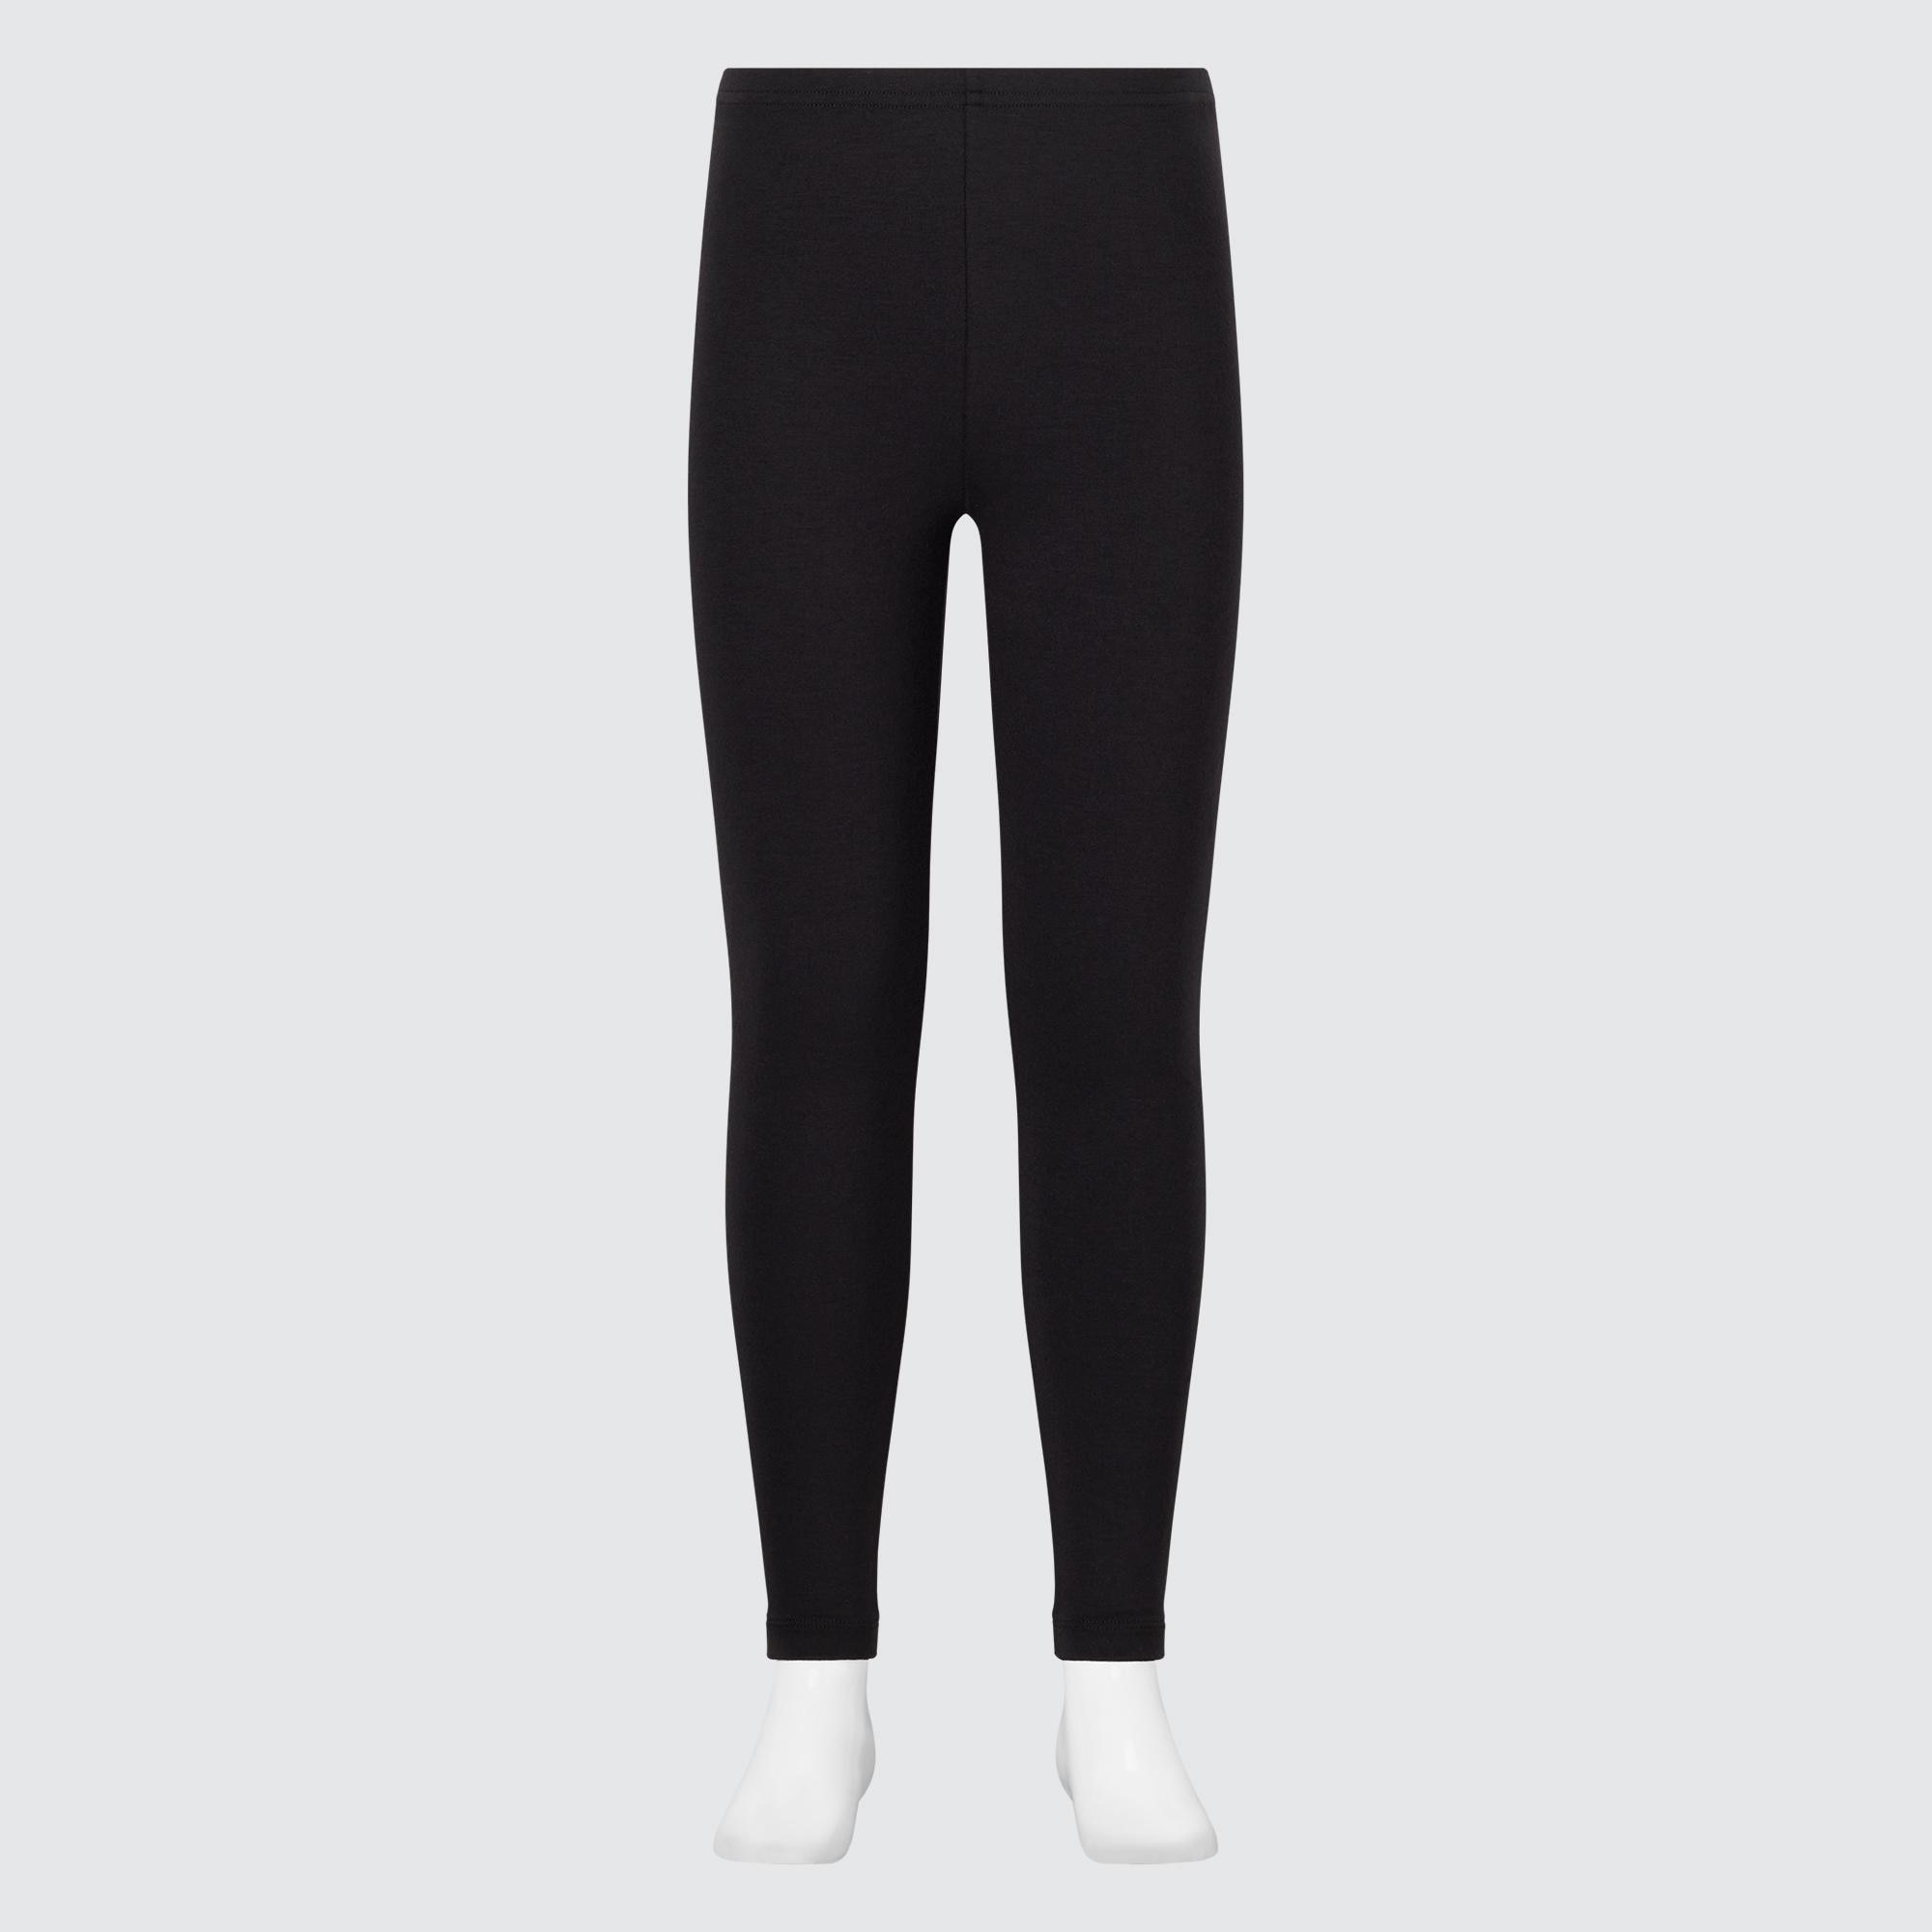 Cotton leggings - Beige - Ladies | H&M IN